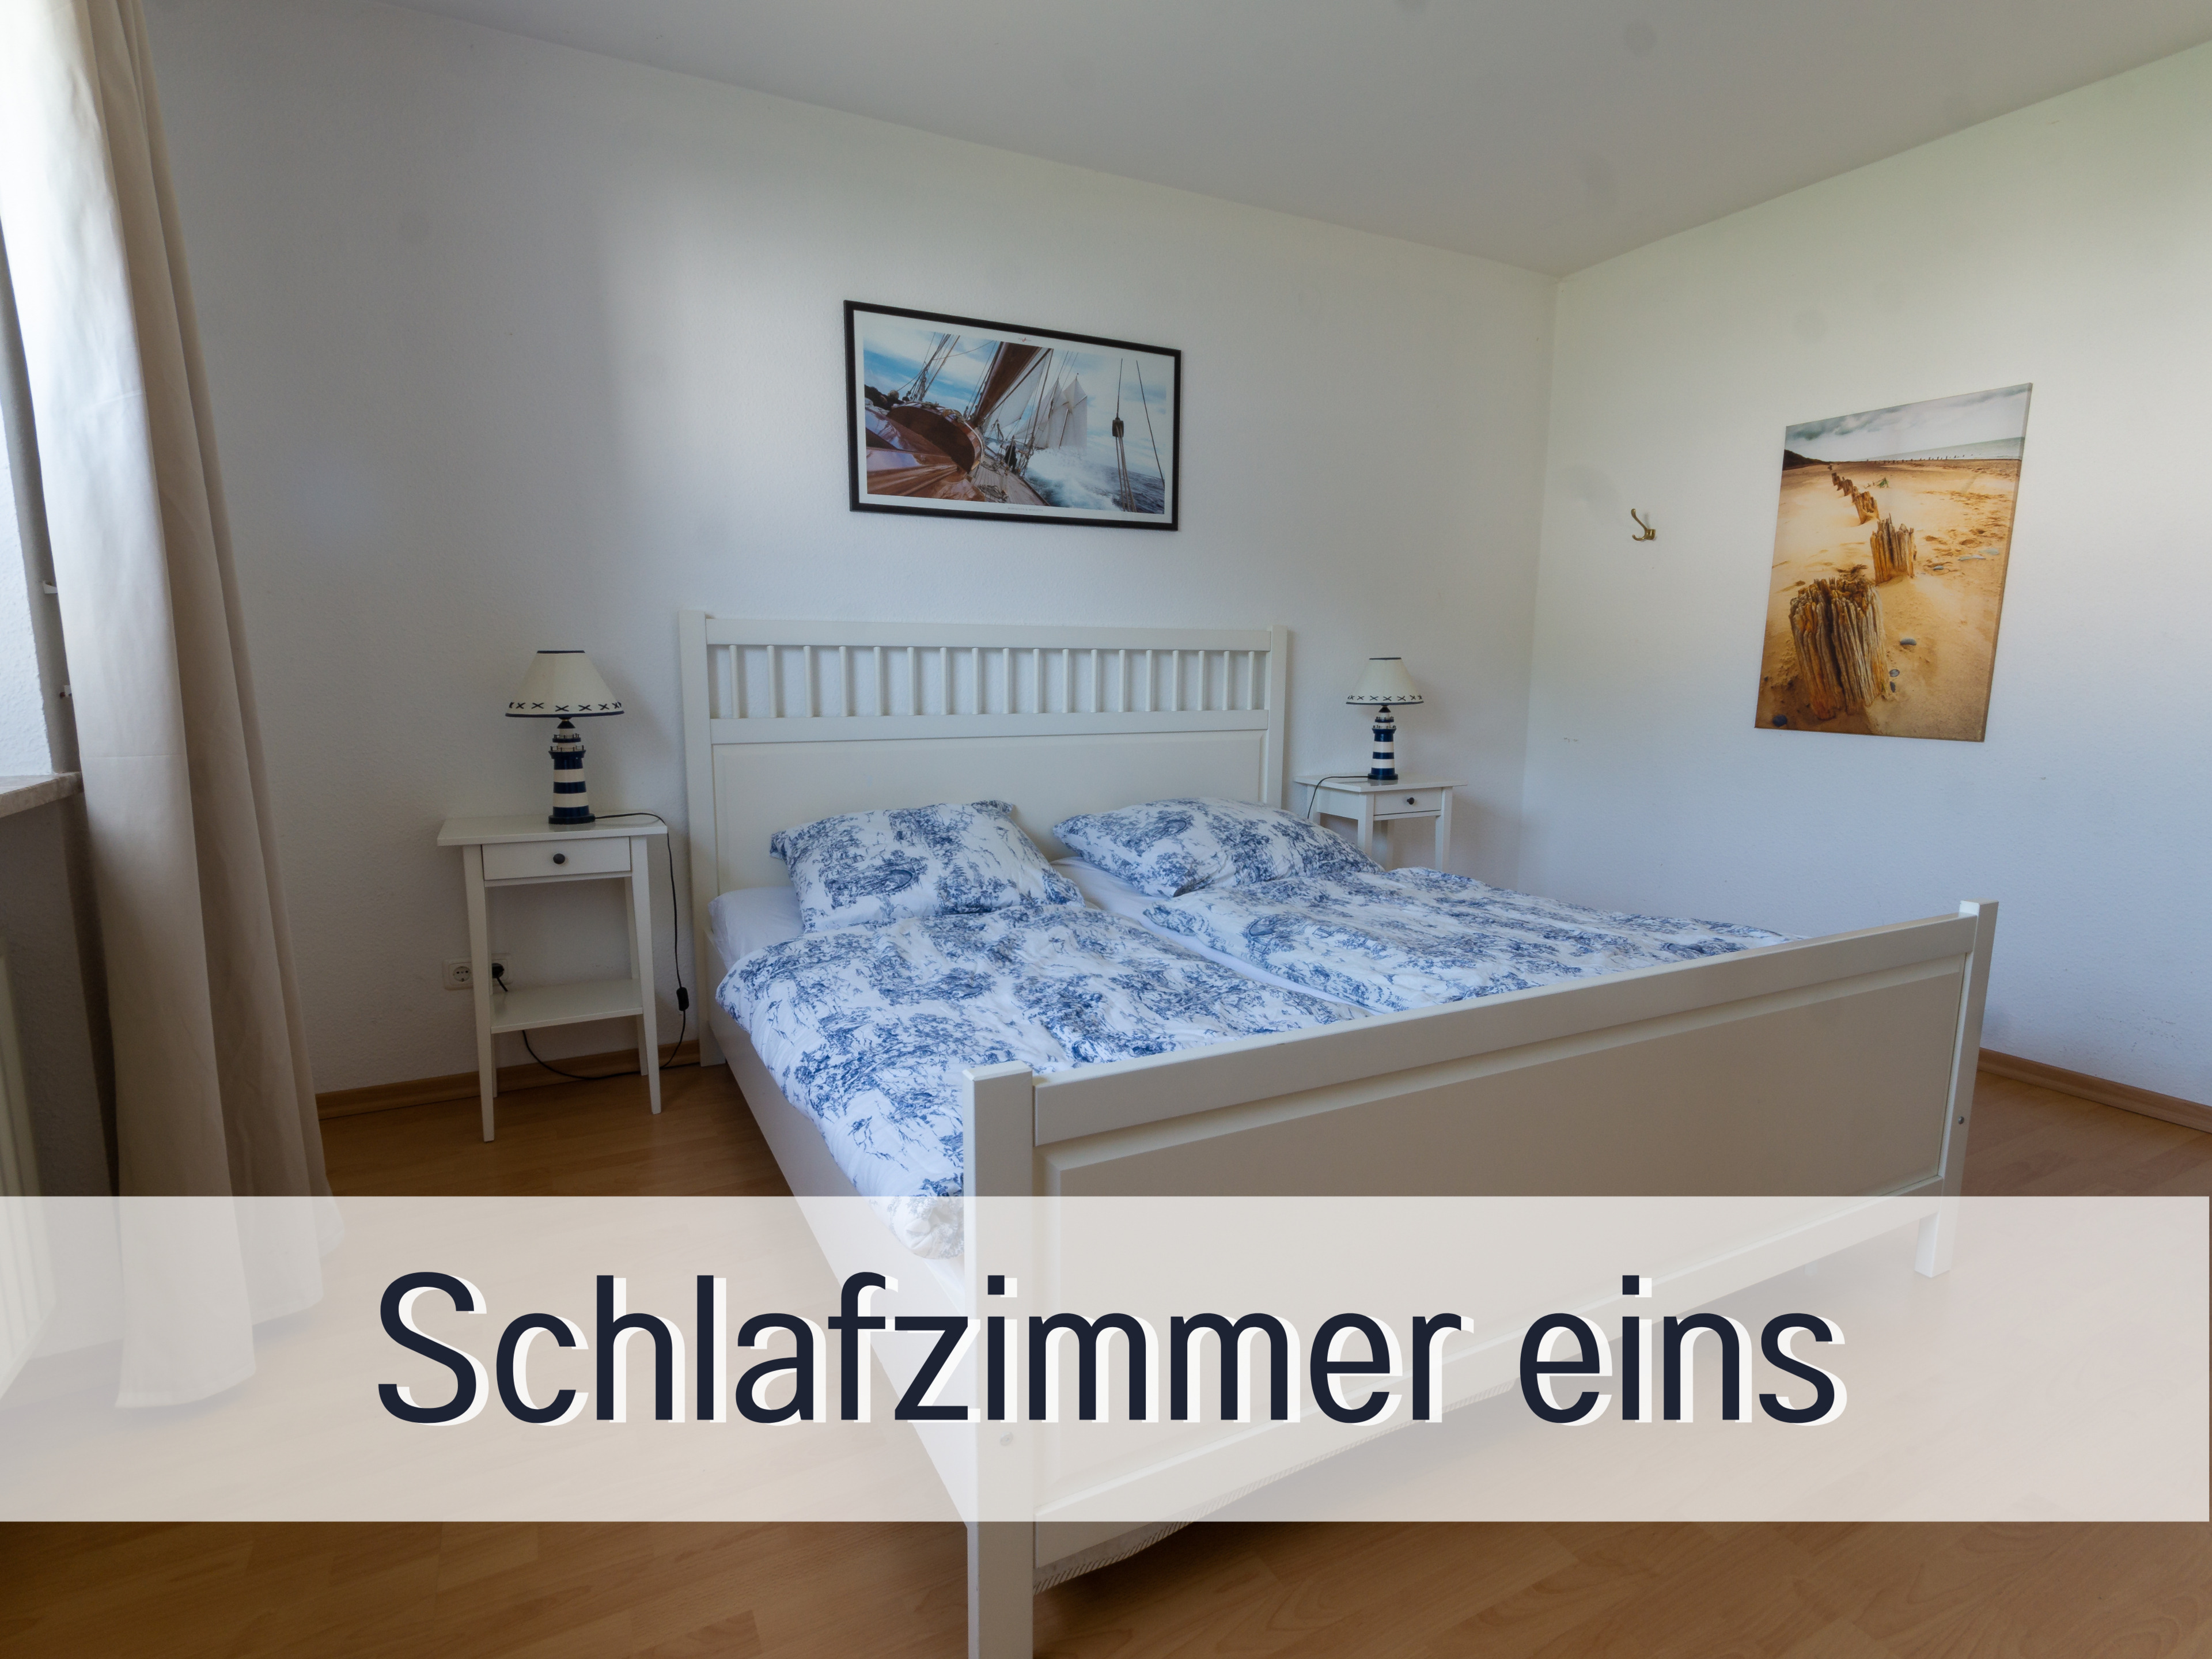 FeWo Wichmann*inklusive Strandkorb am Meer* free W Ferienhaus in Grömitz